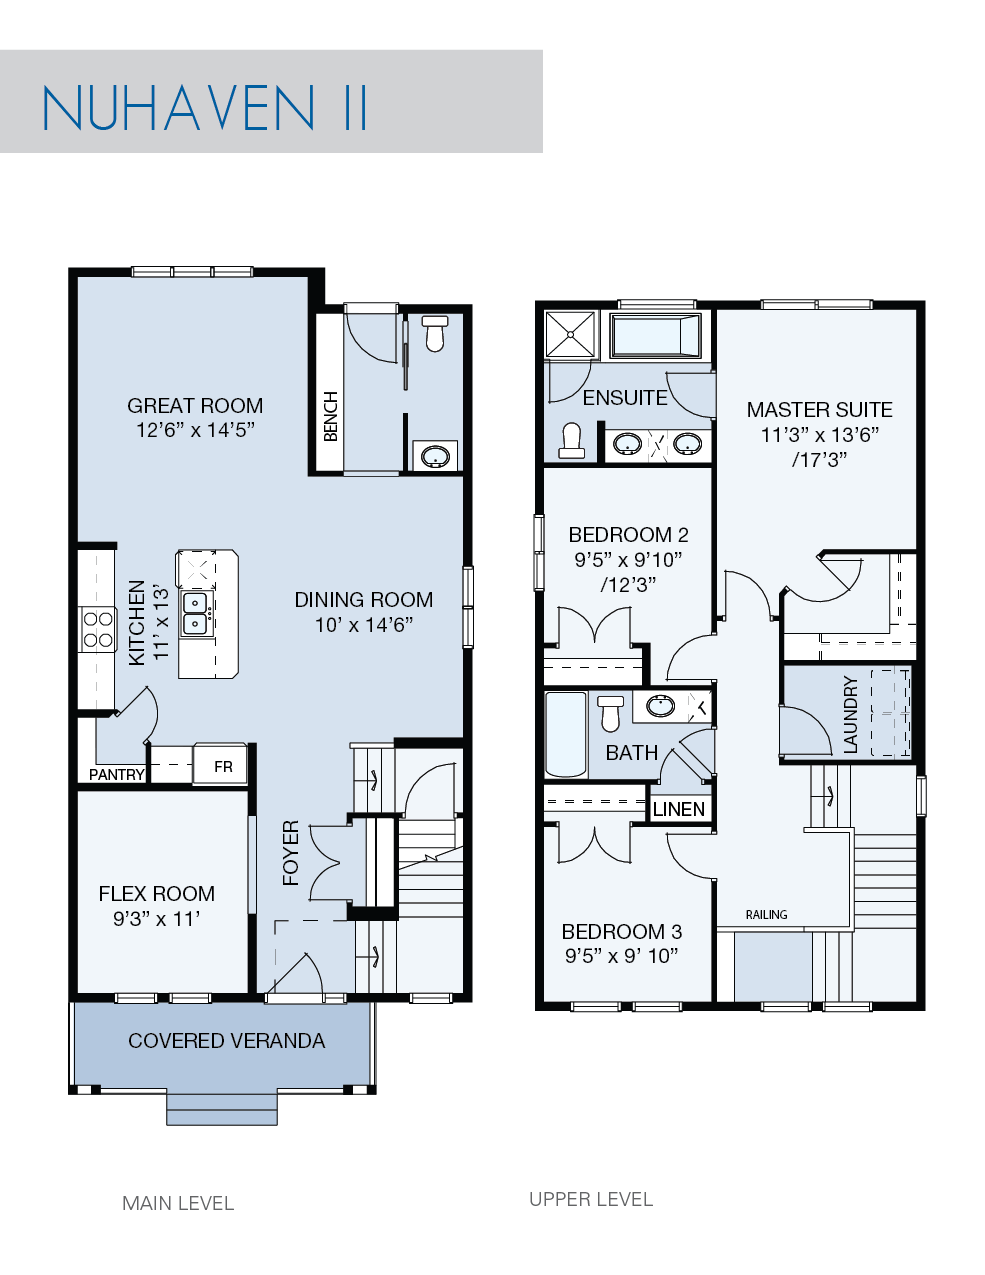 NuHaven II floor plan by NuVista Homes.